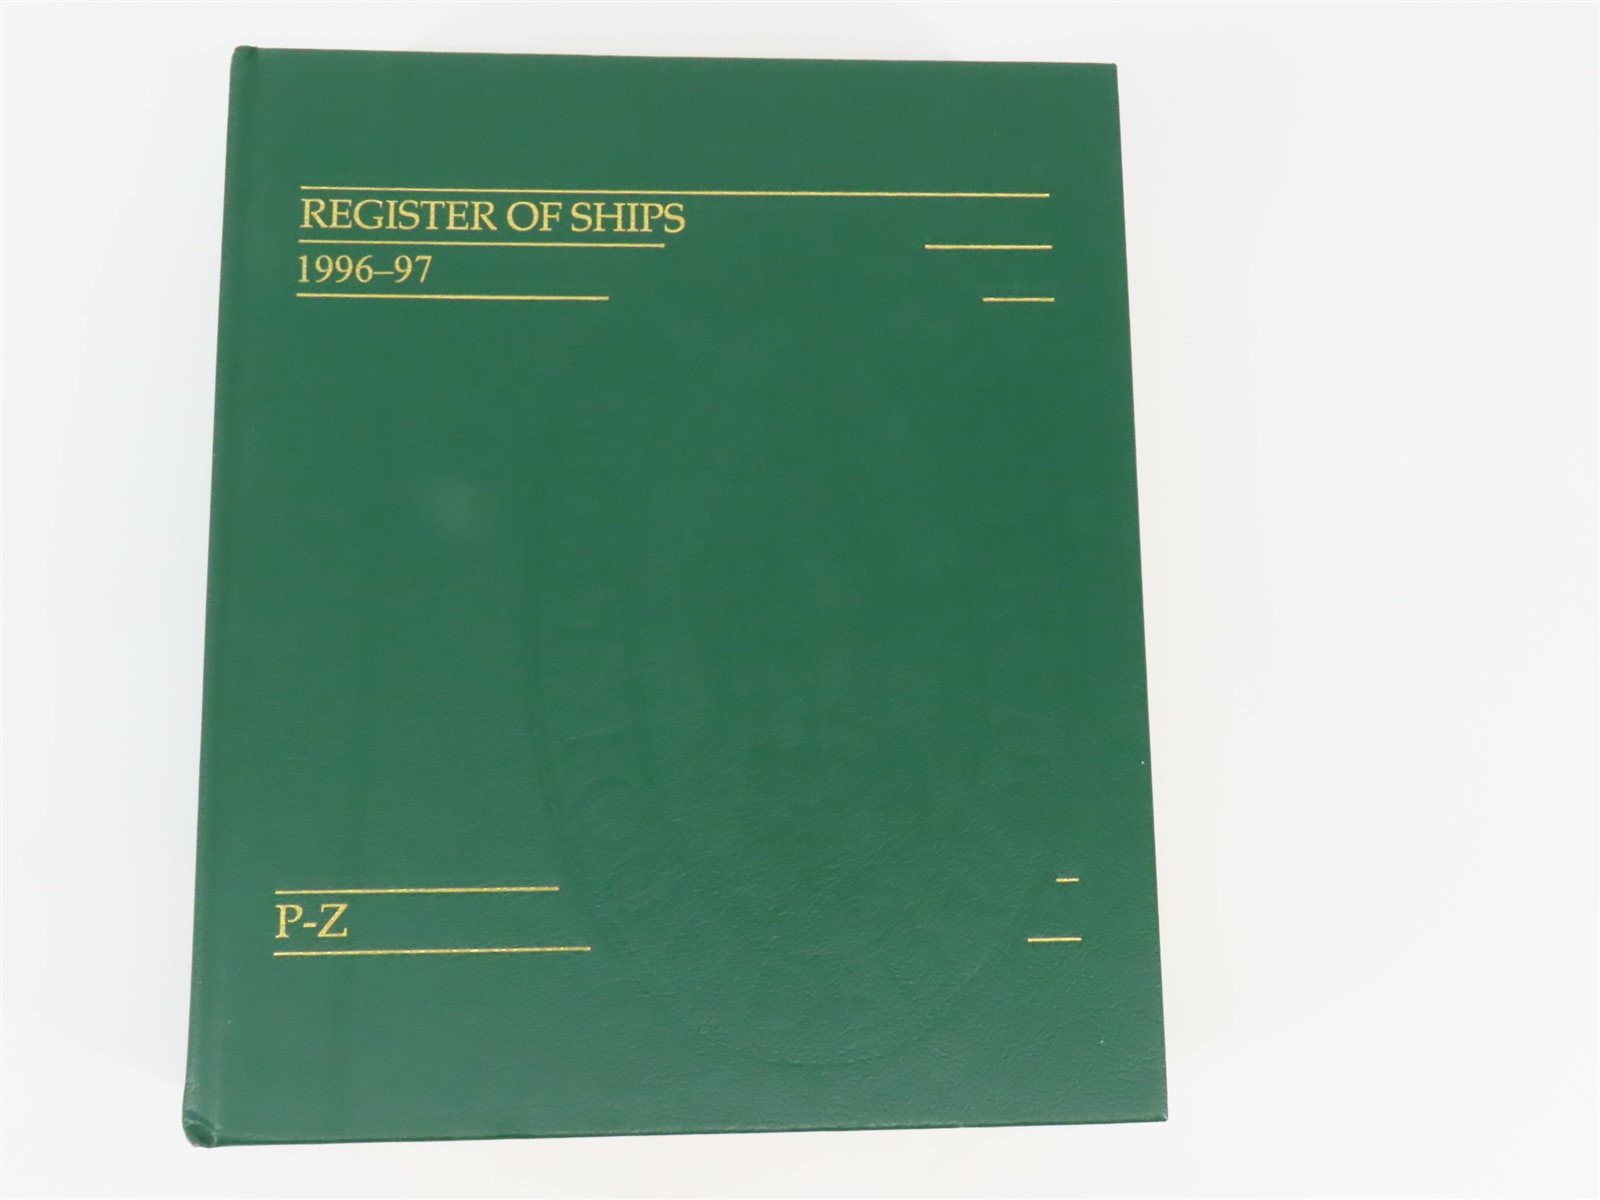 Lloyd's Register of Ships 1996-97 P-Z ©1996 HC Book